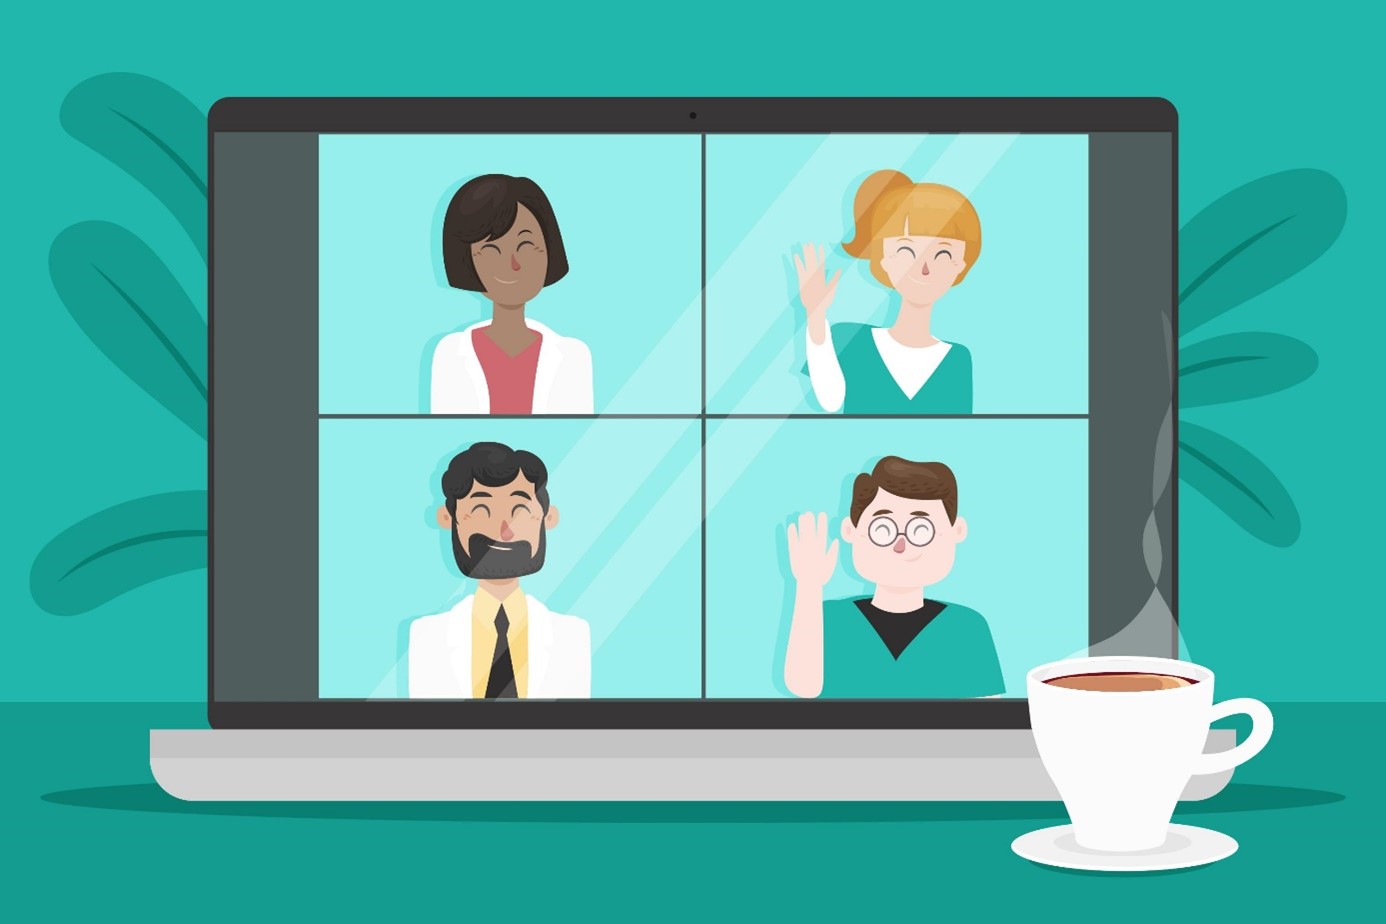 Ein geöffneter Laptop-Bildschirm auf dem vier Kacheln mit verschiedenen lächelnden Personen zu sehen sind, zwei von ihnen winken. Vor dem Bildschirm steht eine Kaffeetasse. Das Bild wird von einem entspannten Grünton dominiert.